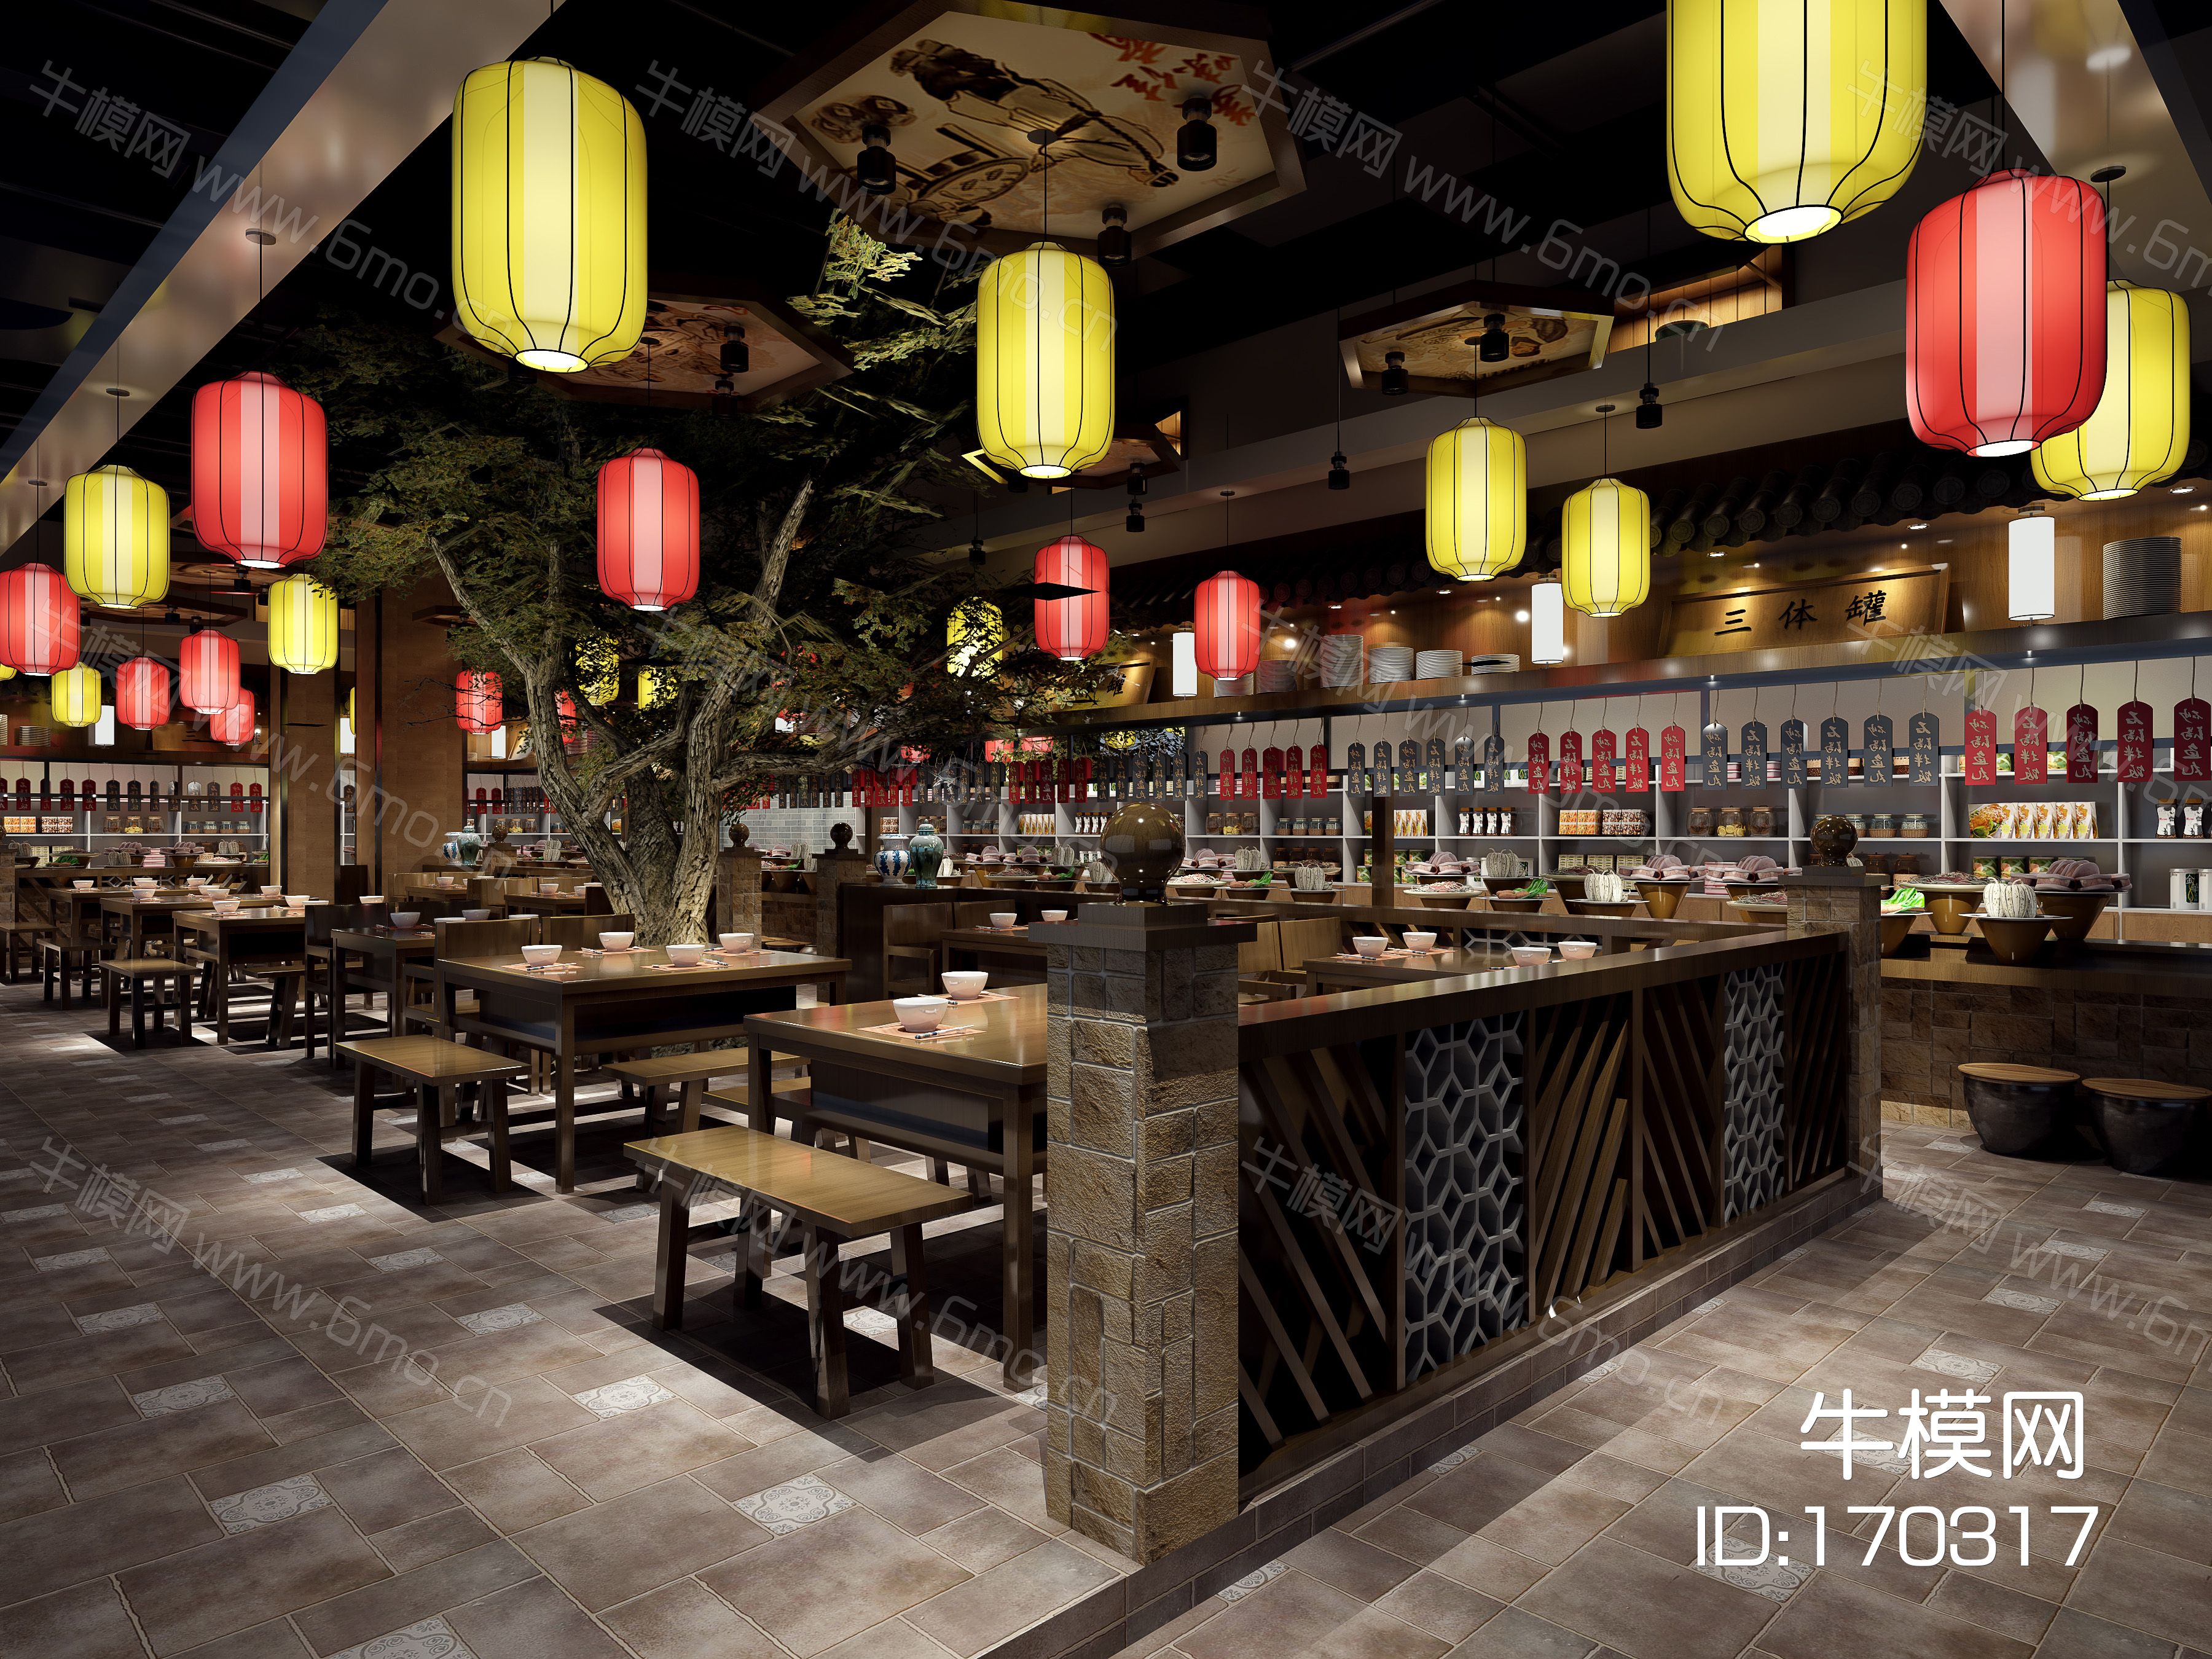 中式餐厅 方桌板凳挂牌植物树